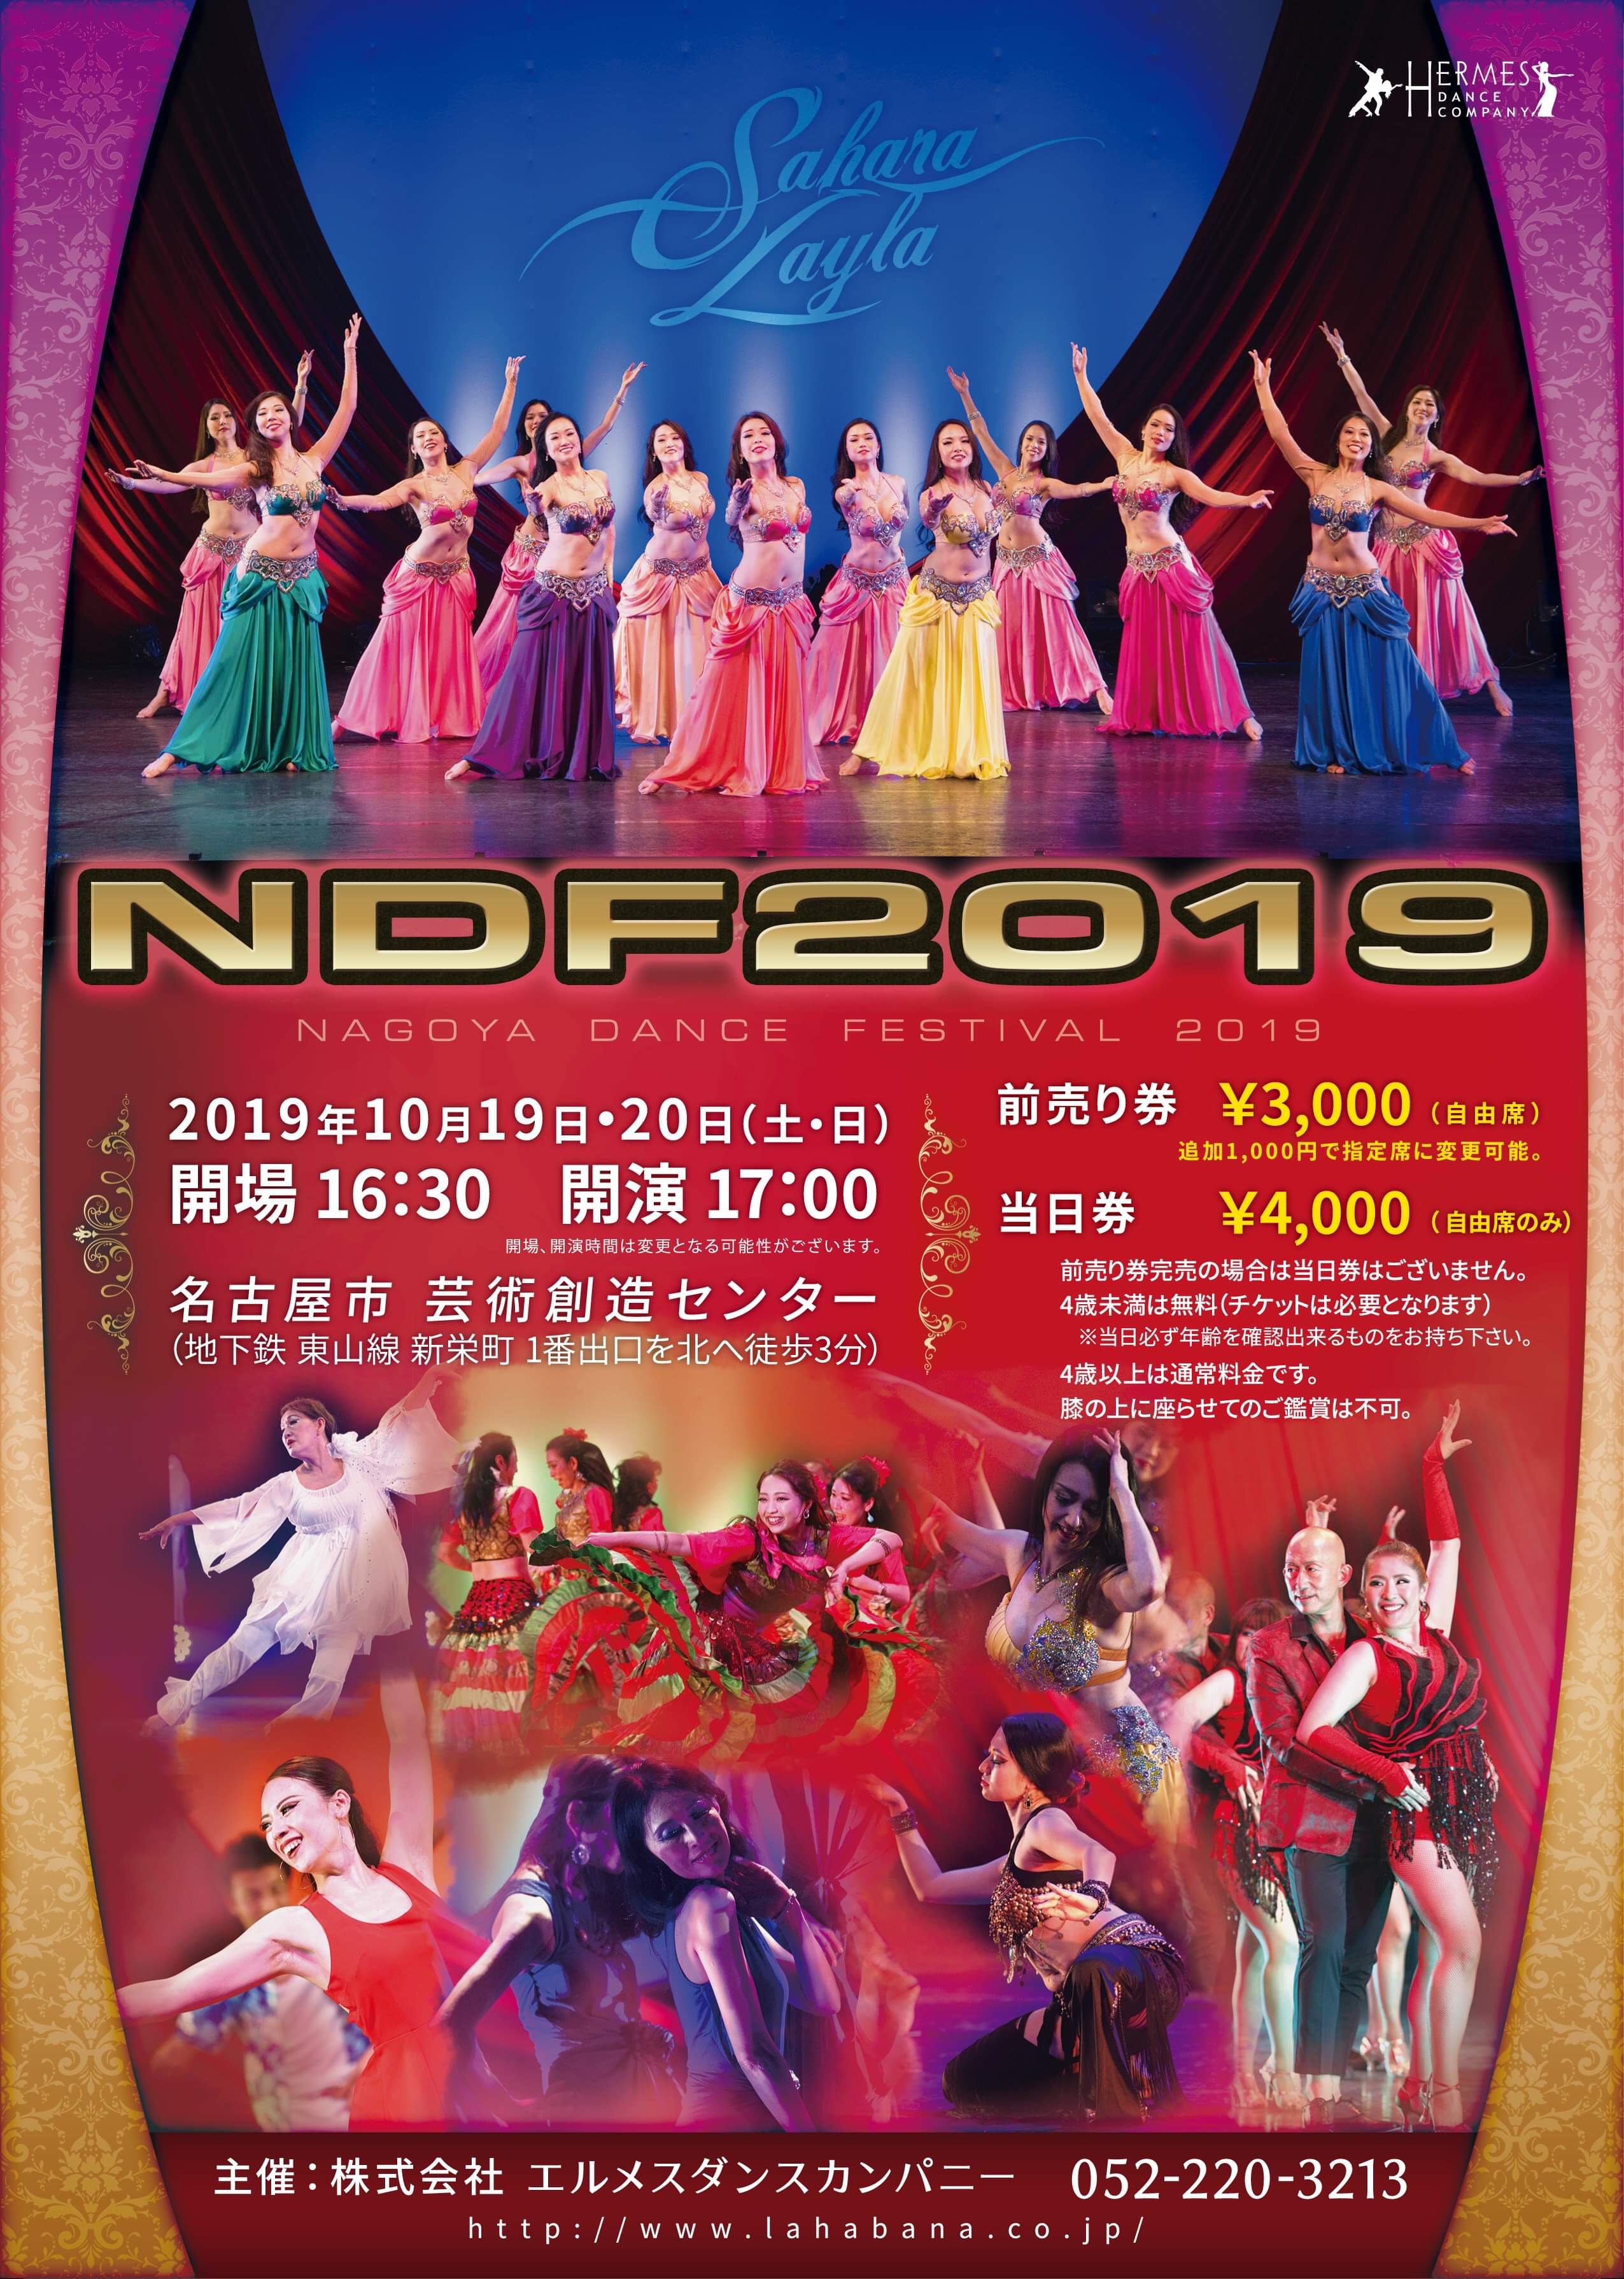 NDF2019 チケット販売のお知らせ